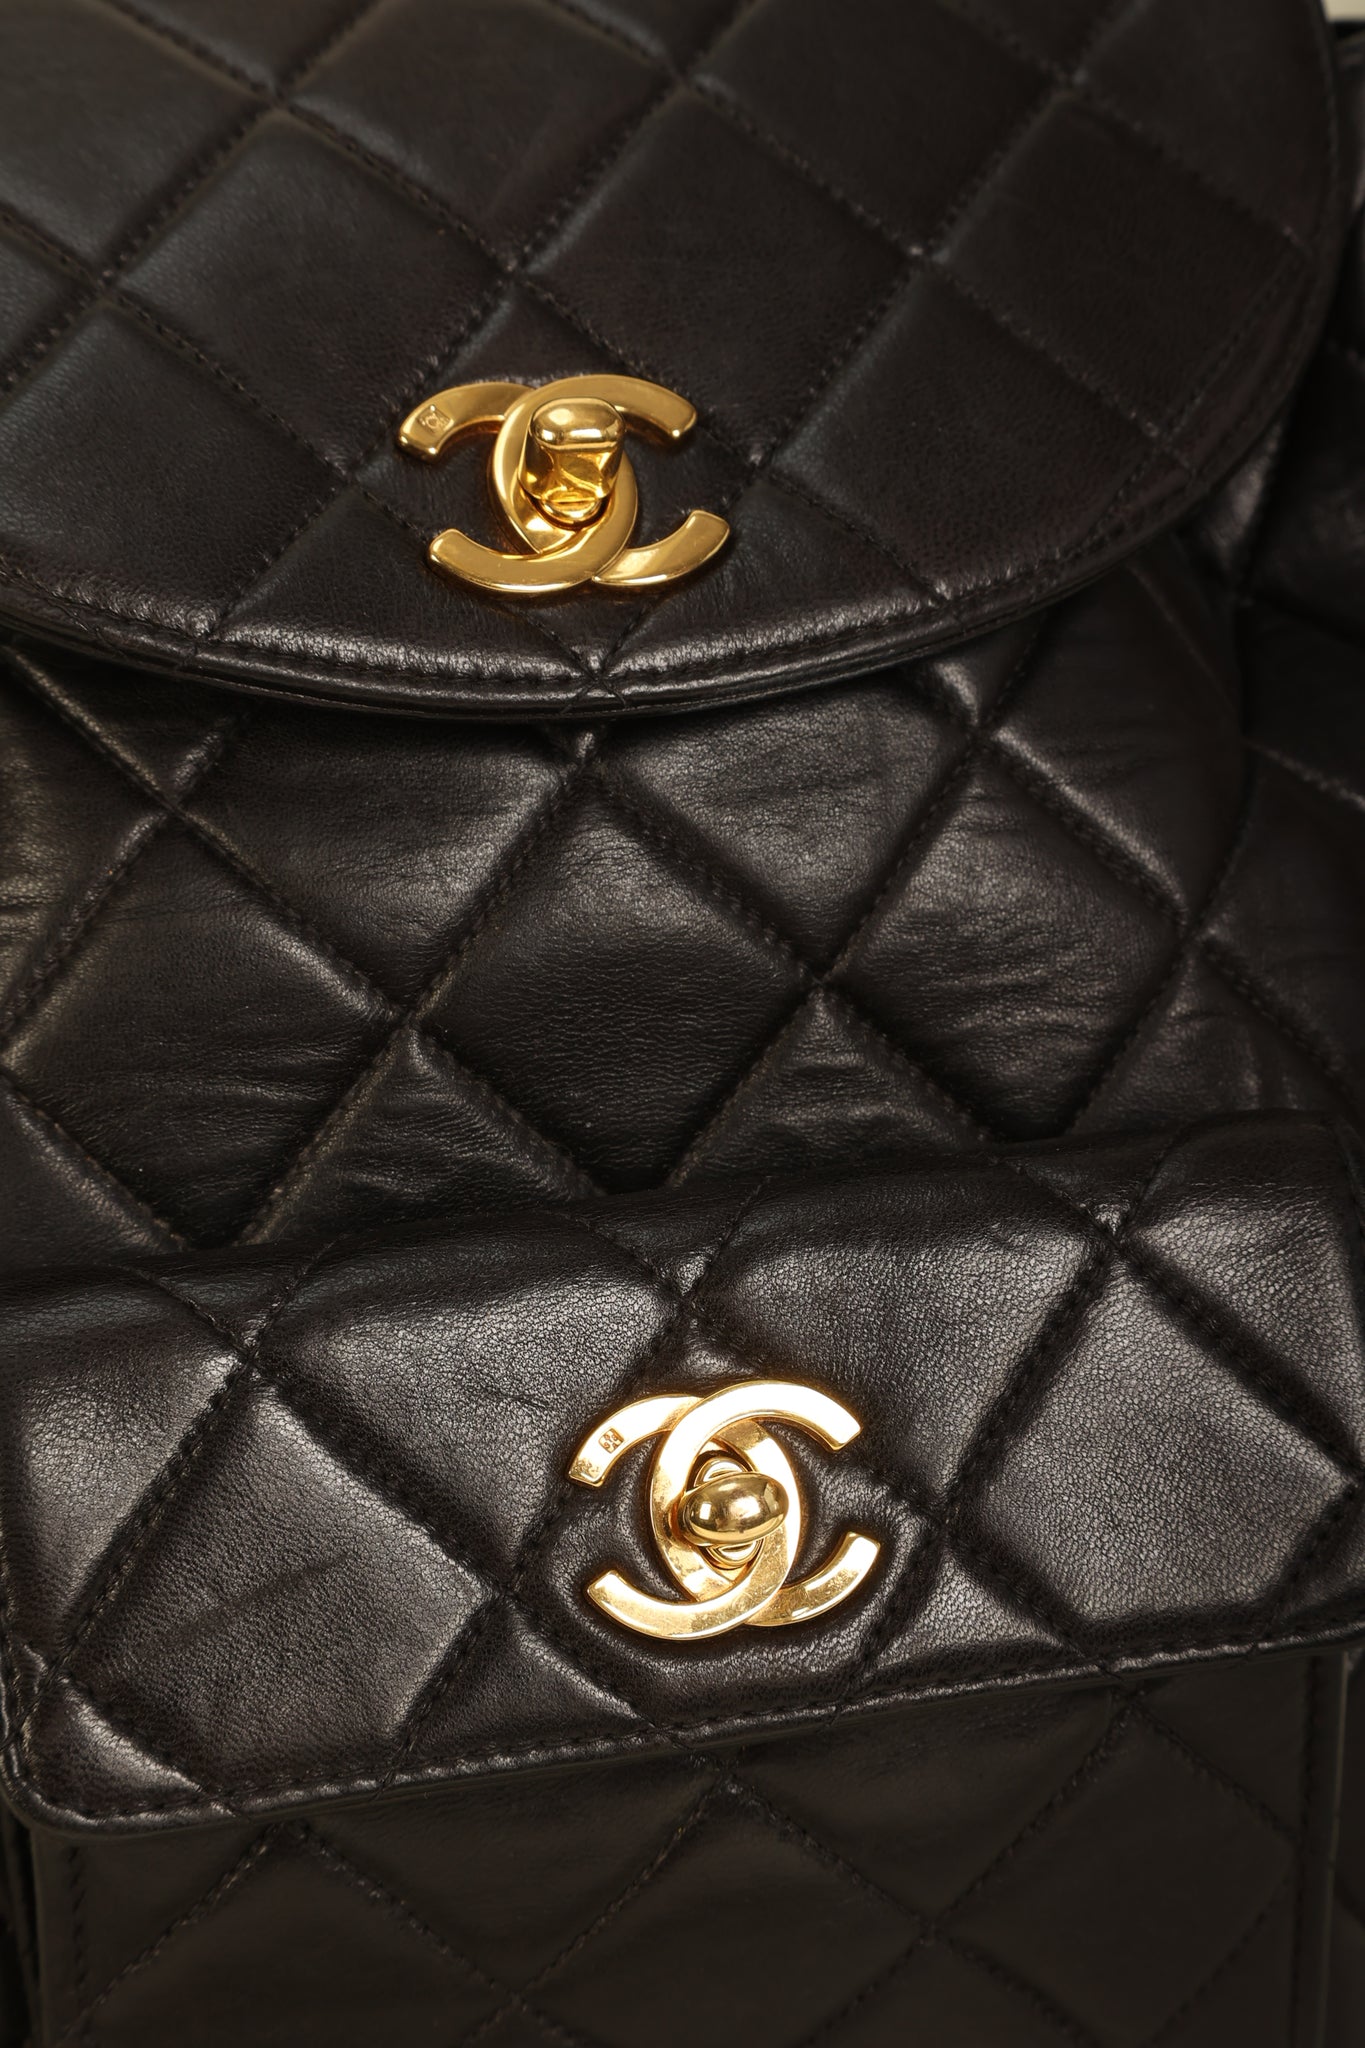 Chanel Lambskin Double Turnlock Backpack